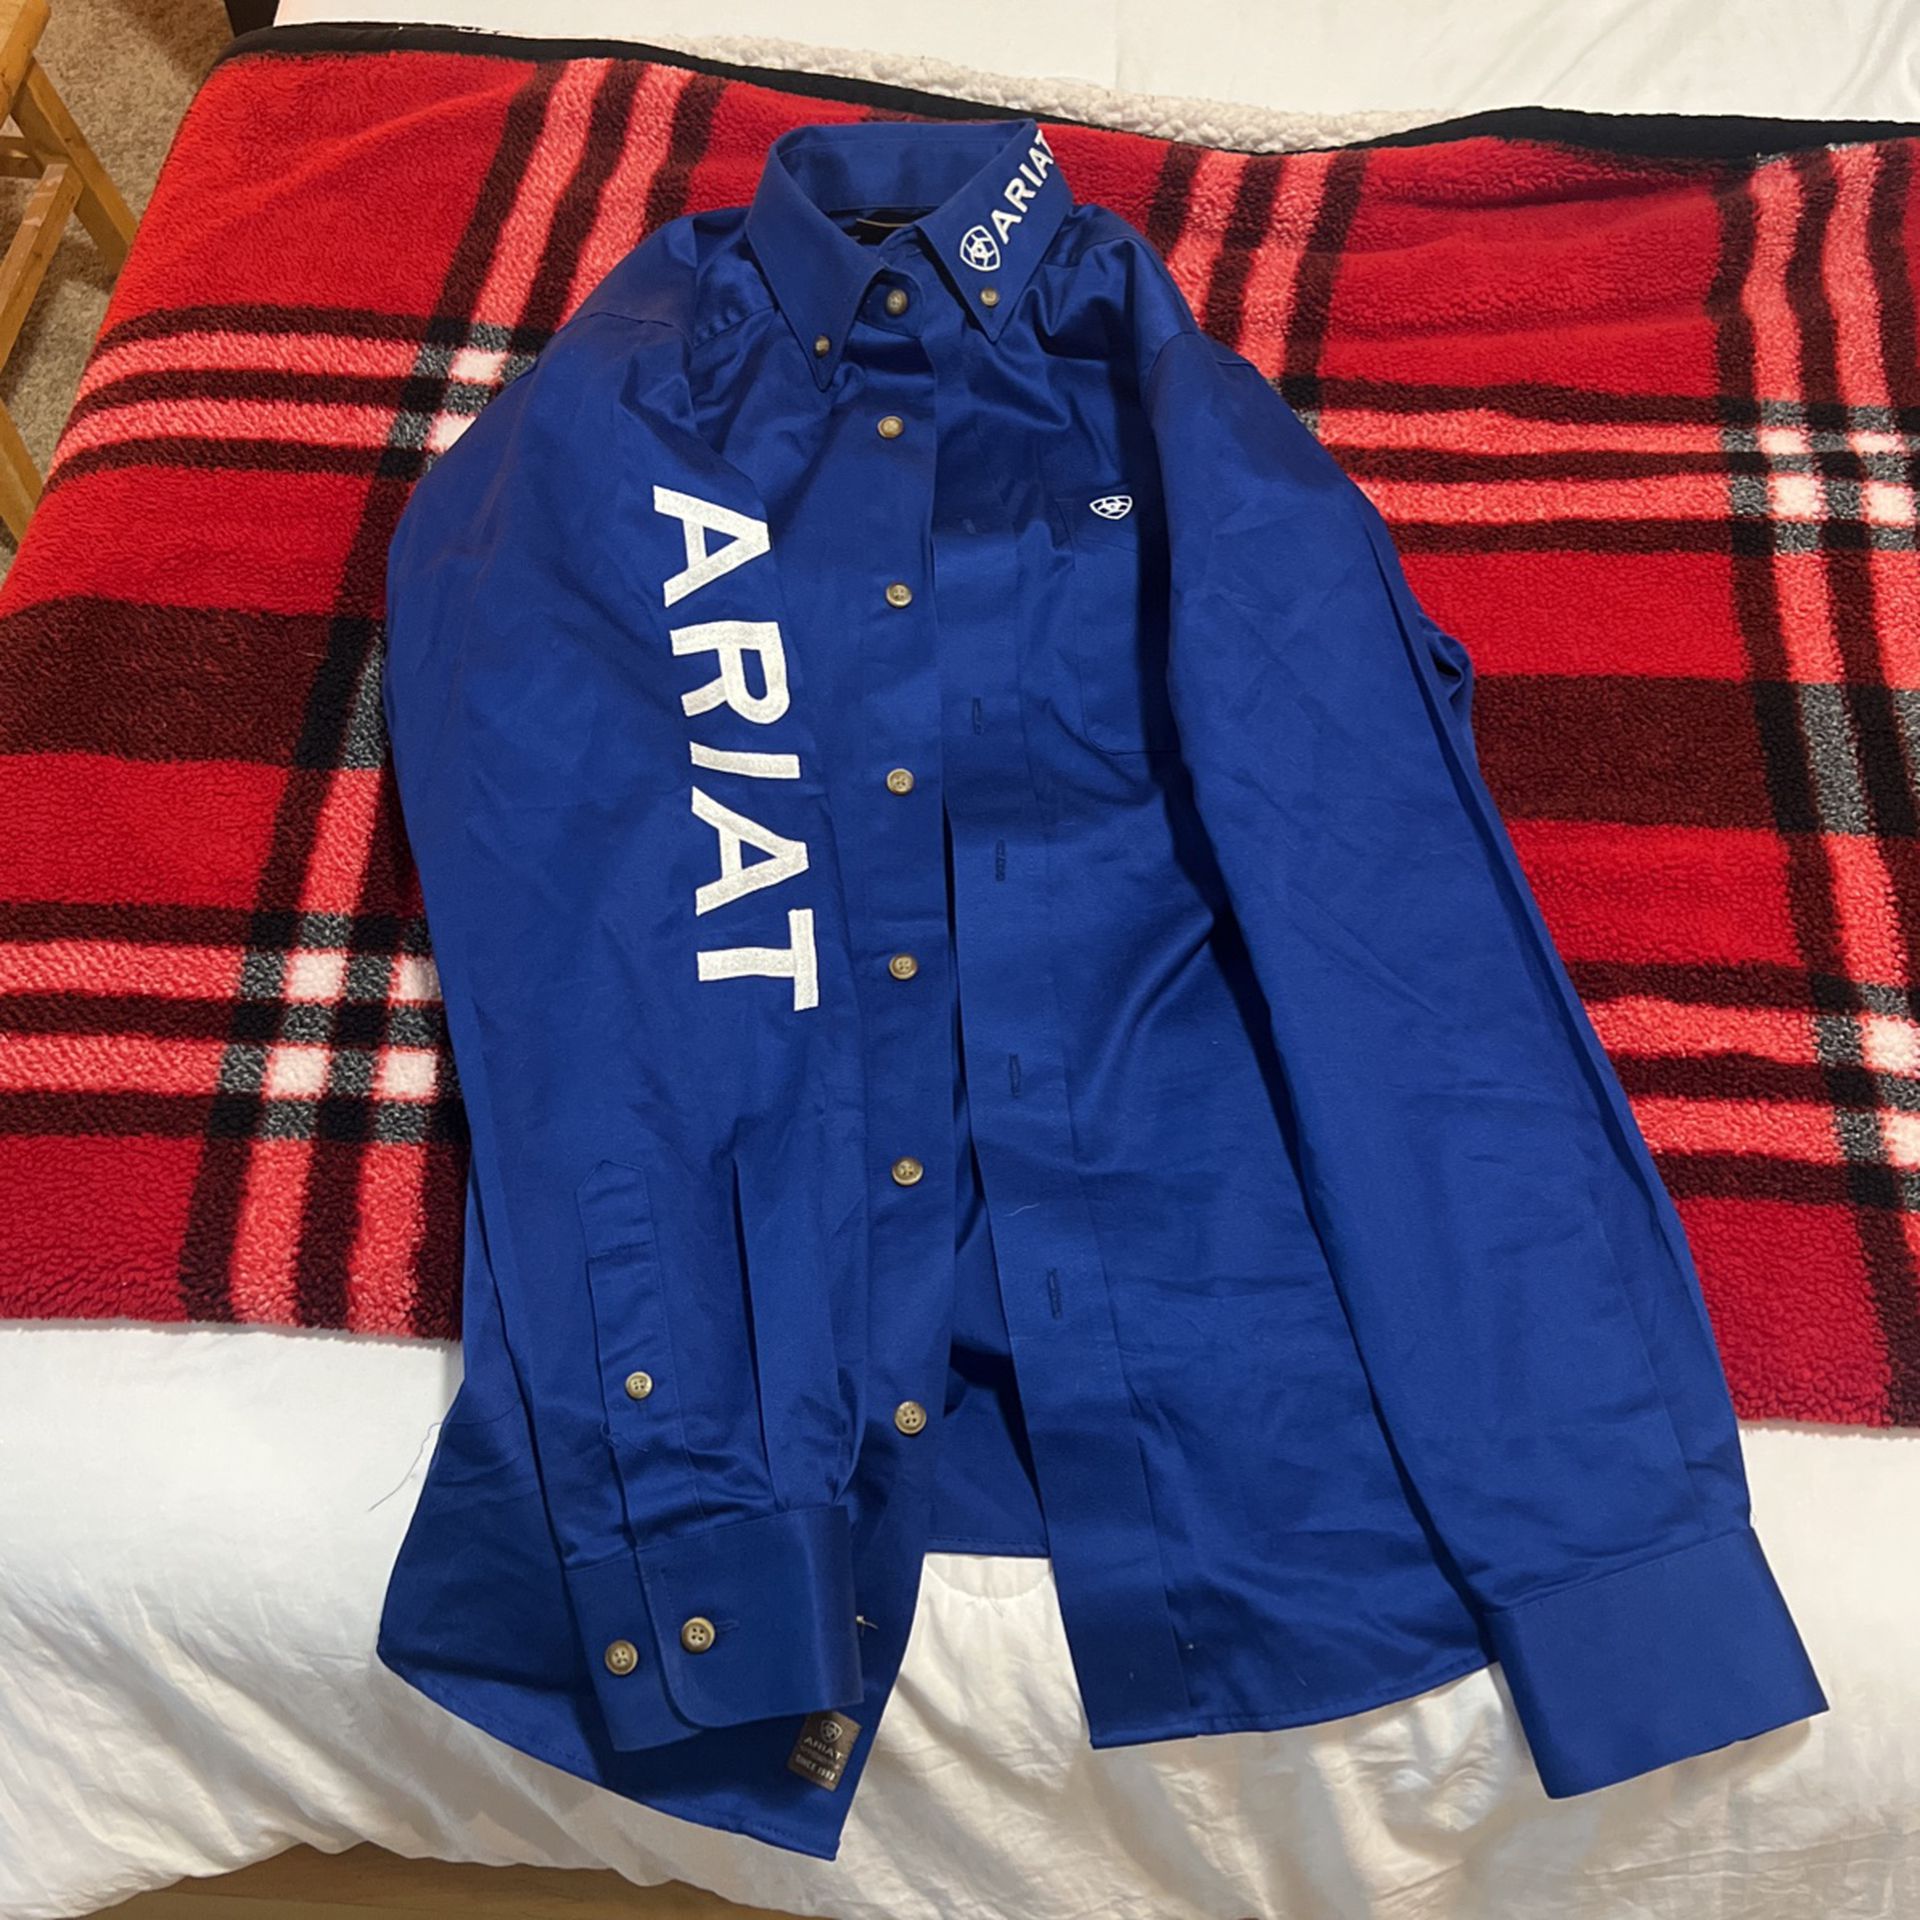 Ariat Mens Dress Shirt  - Small